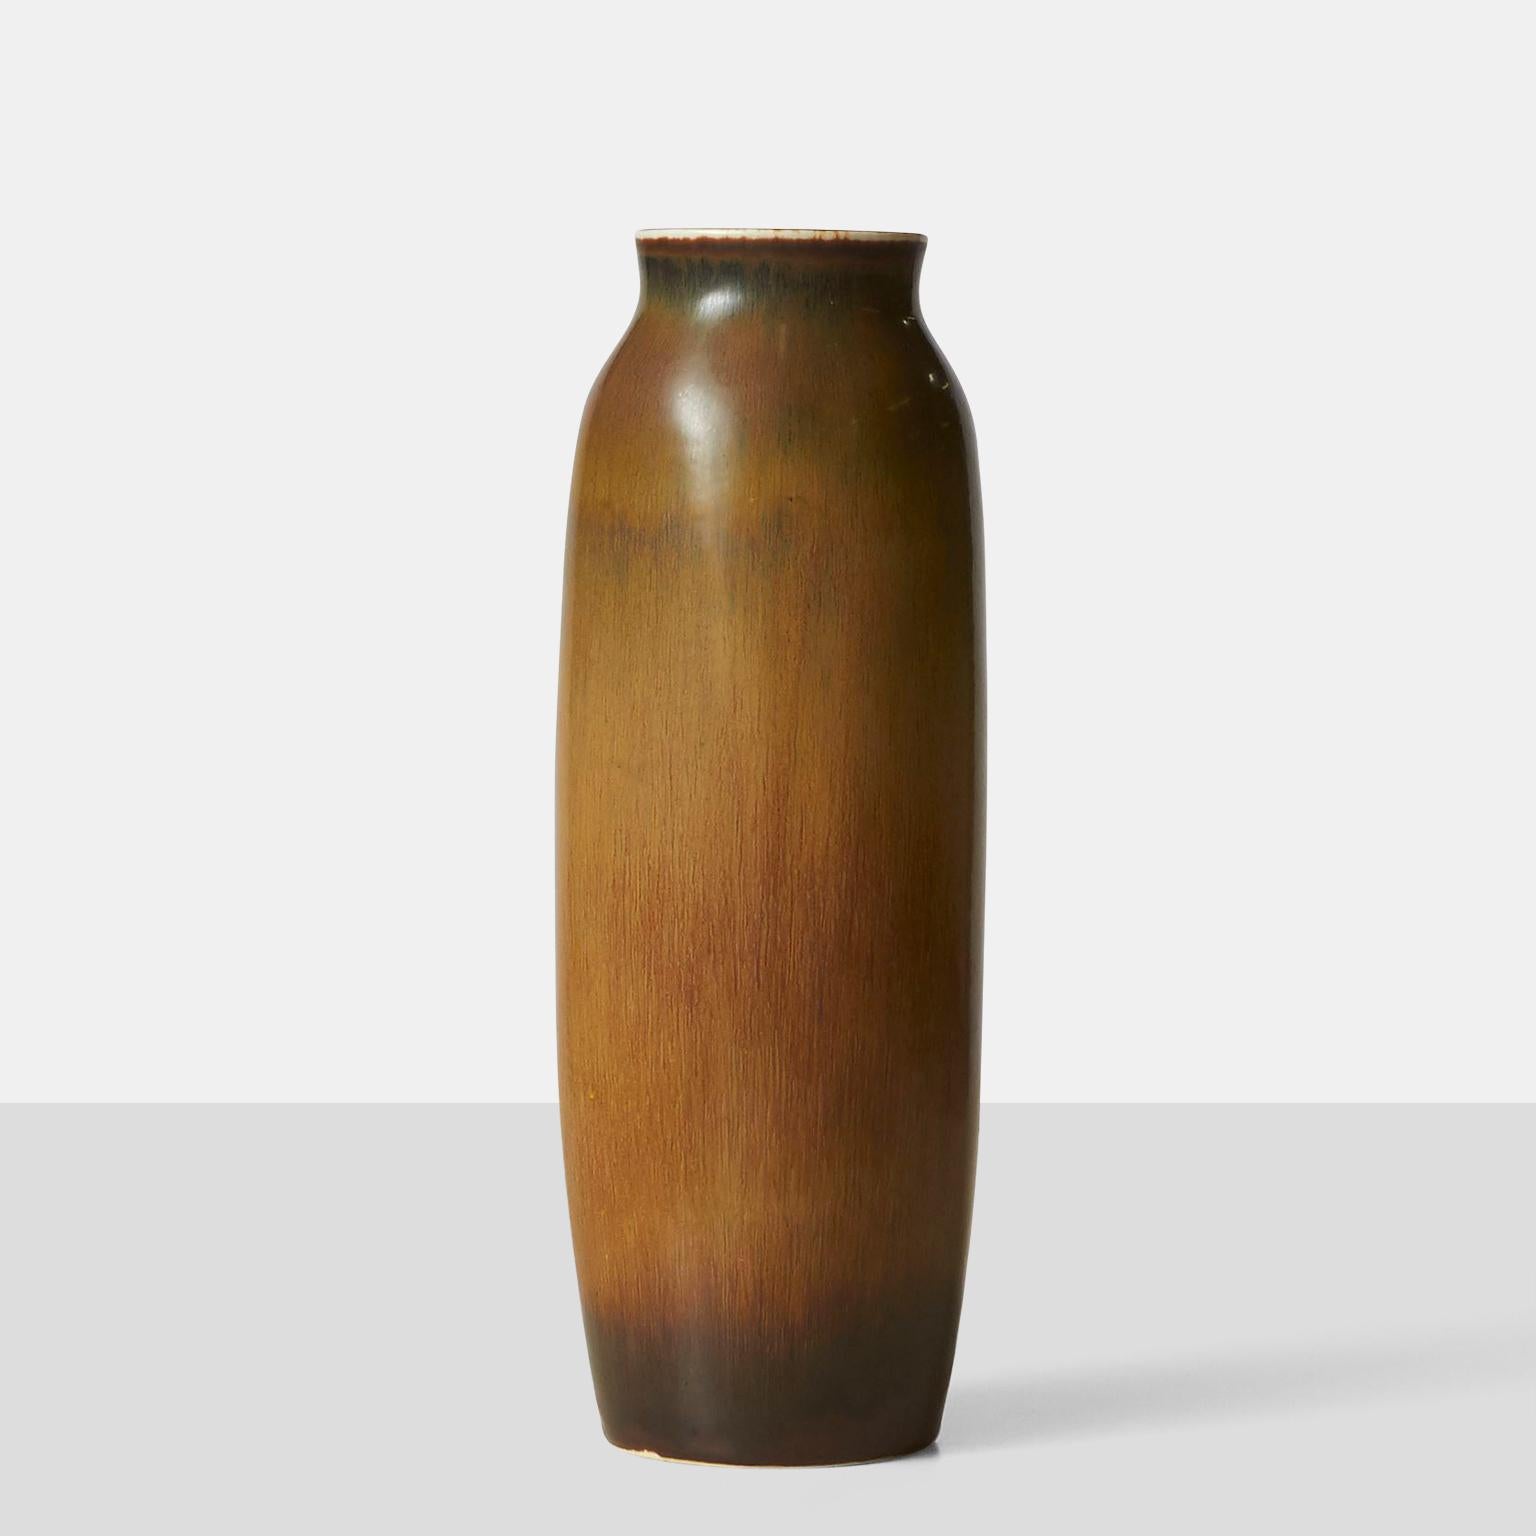 Vase von Carl-Harry Stalhane mit Hasenfellglasur in Zimt und Braun. In den 1960er Jahren von Rörstrand gefertigt und vom Künstler beschriftet.